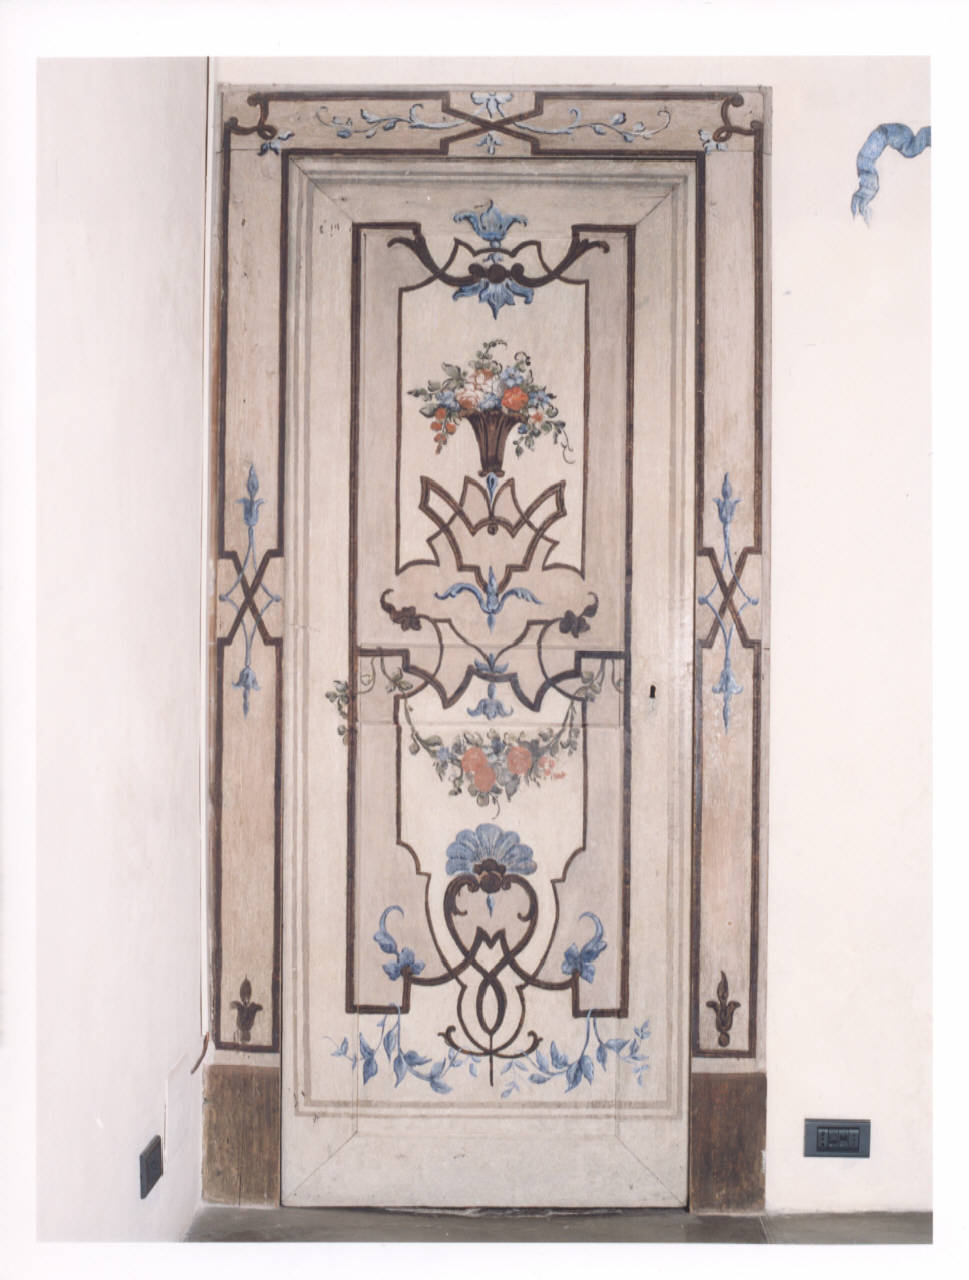 Motivi decorativi geometrici con fiori (porta dipinta) - manifattura lombarda (prima metà sec. XVIII)